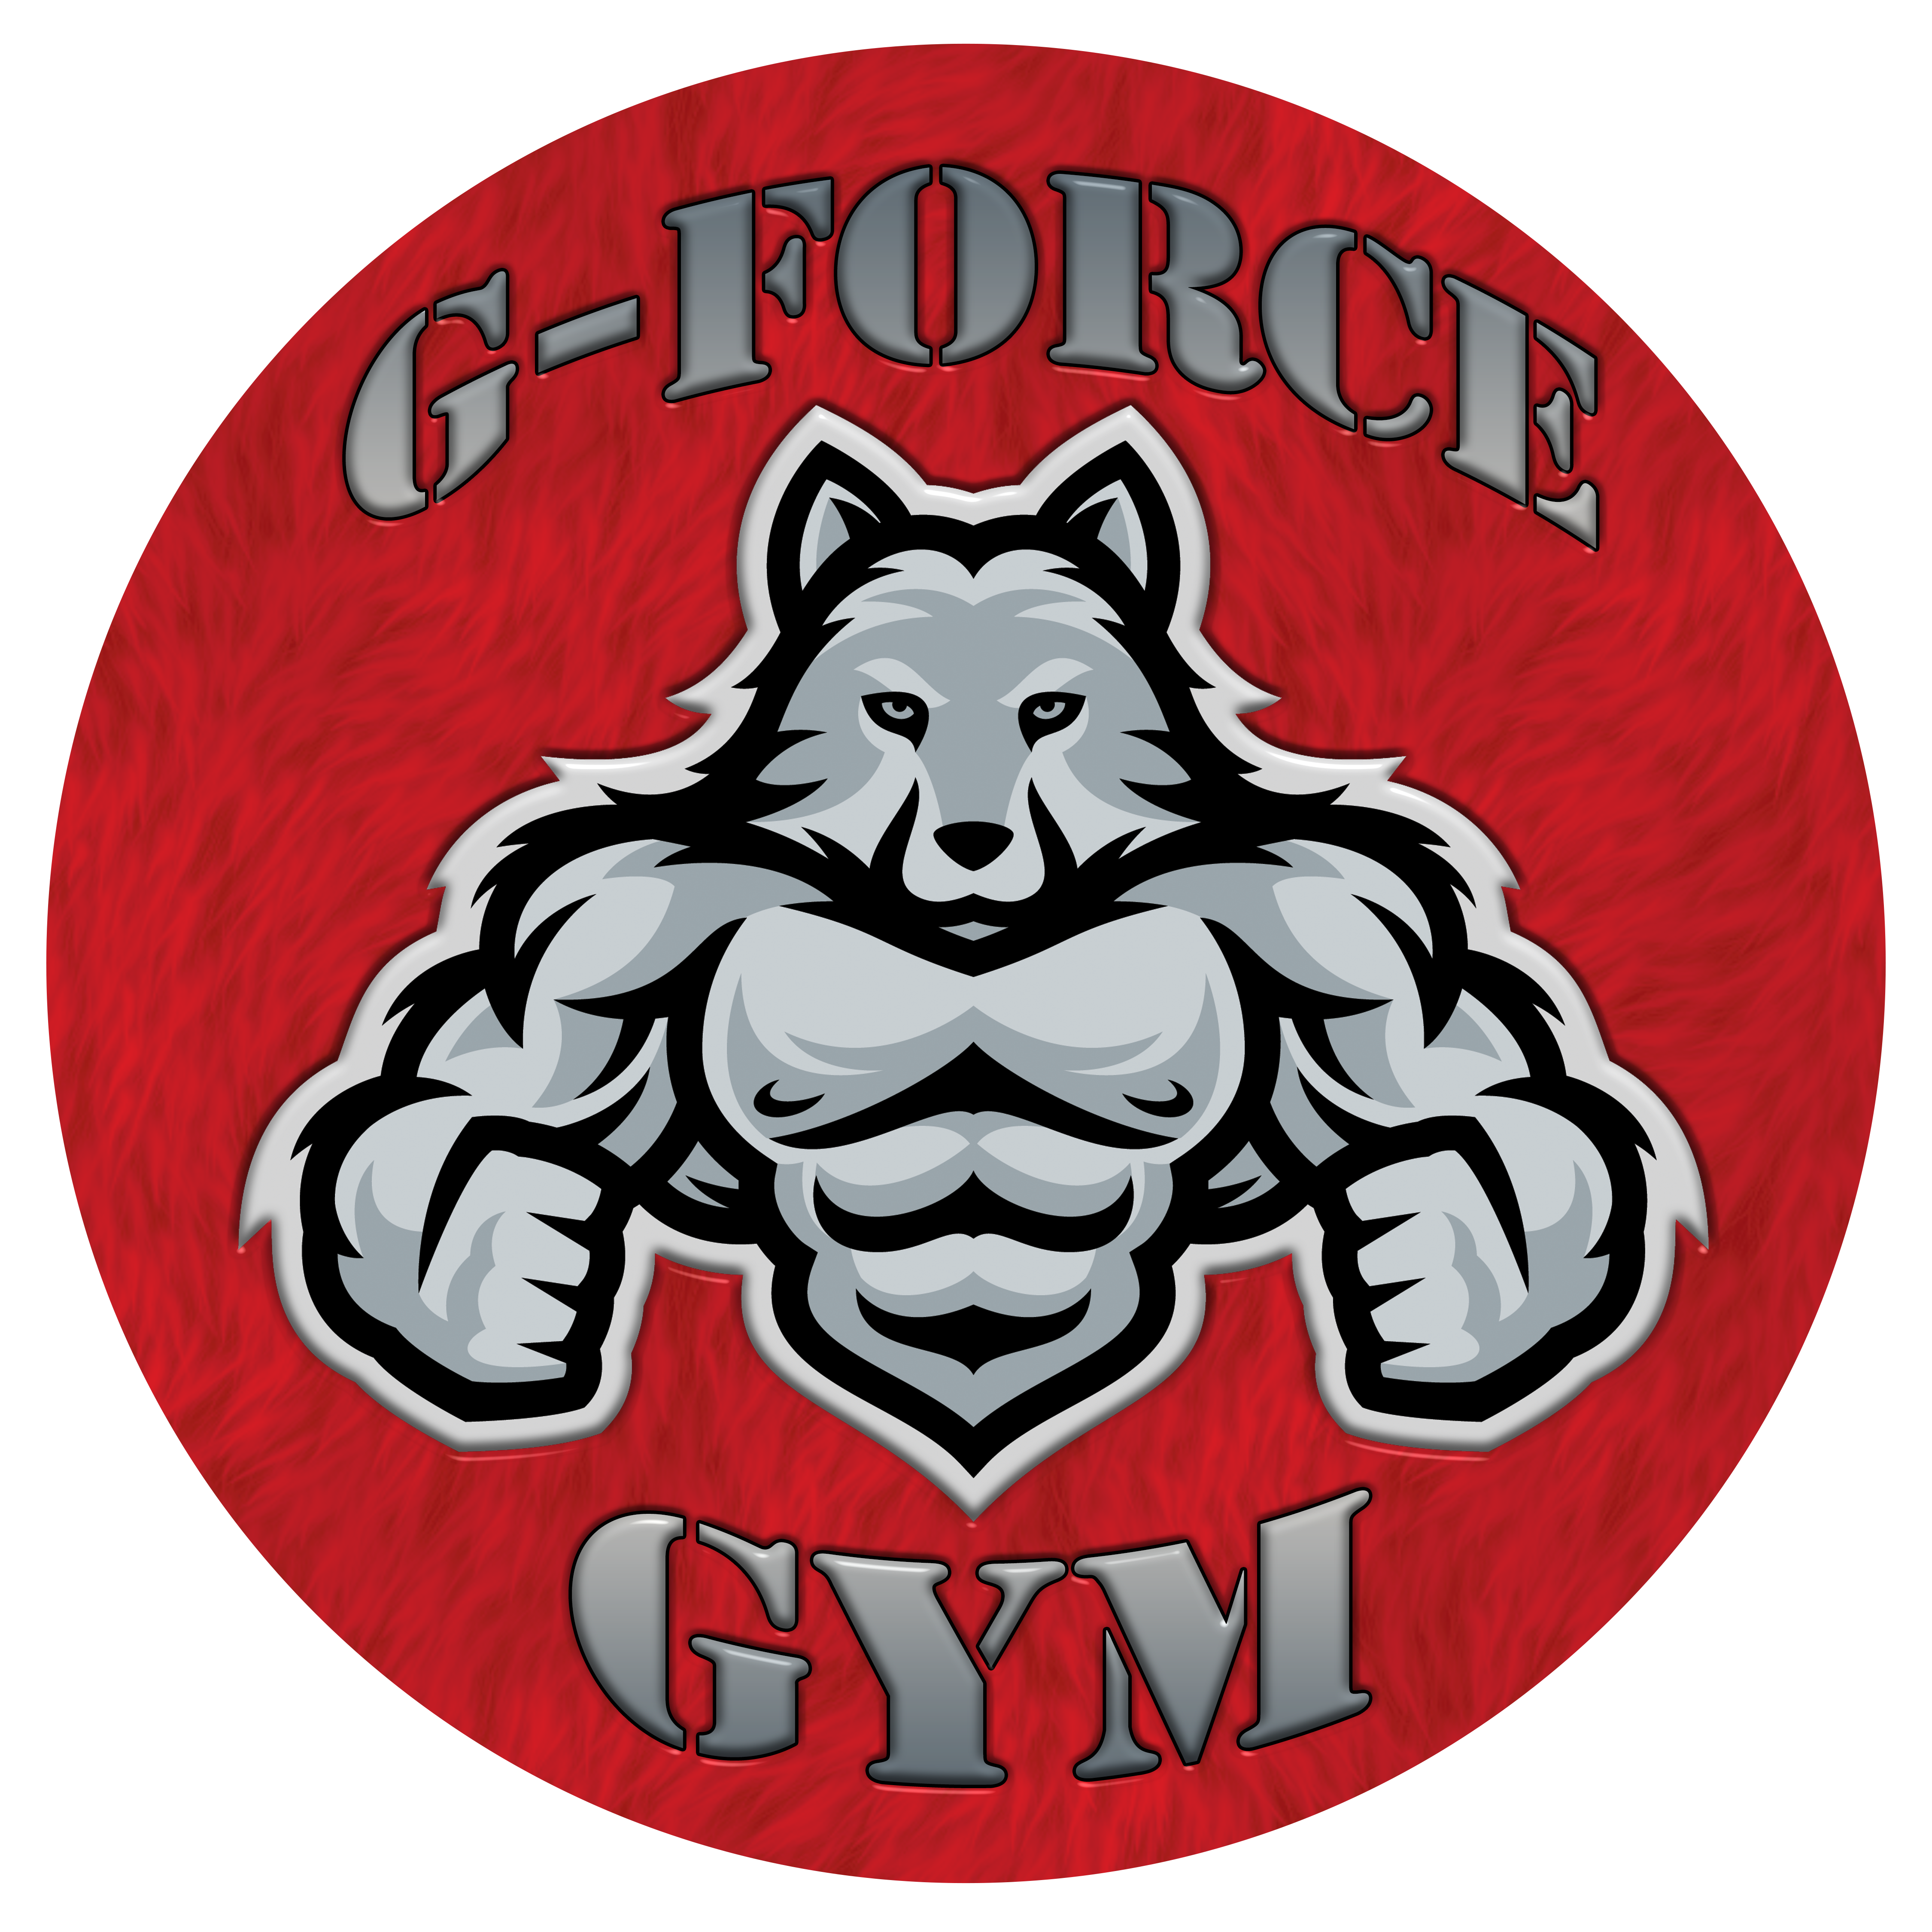 G-Force Gym